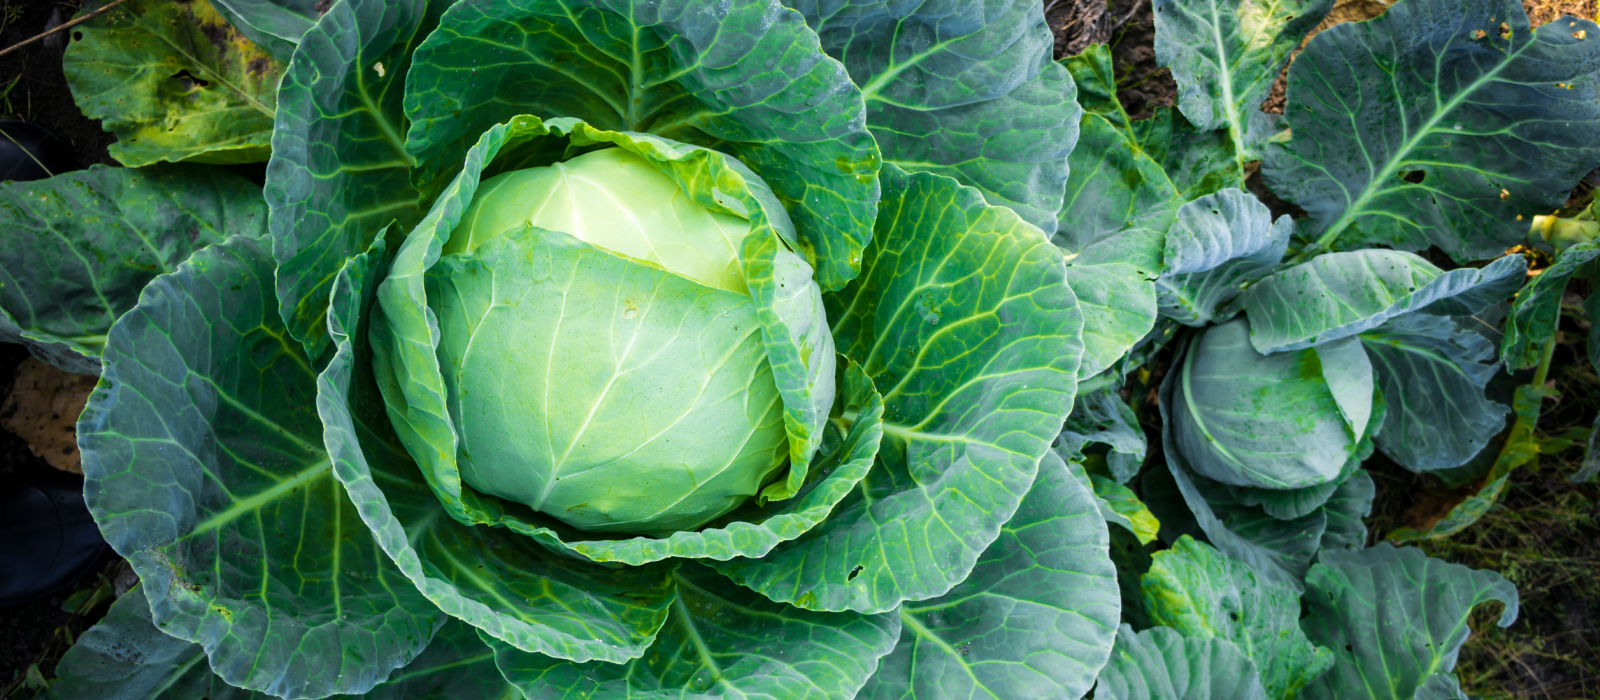 Jardinage : les meilleurs légumes à planter en hiver selon les régions